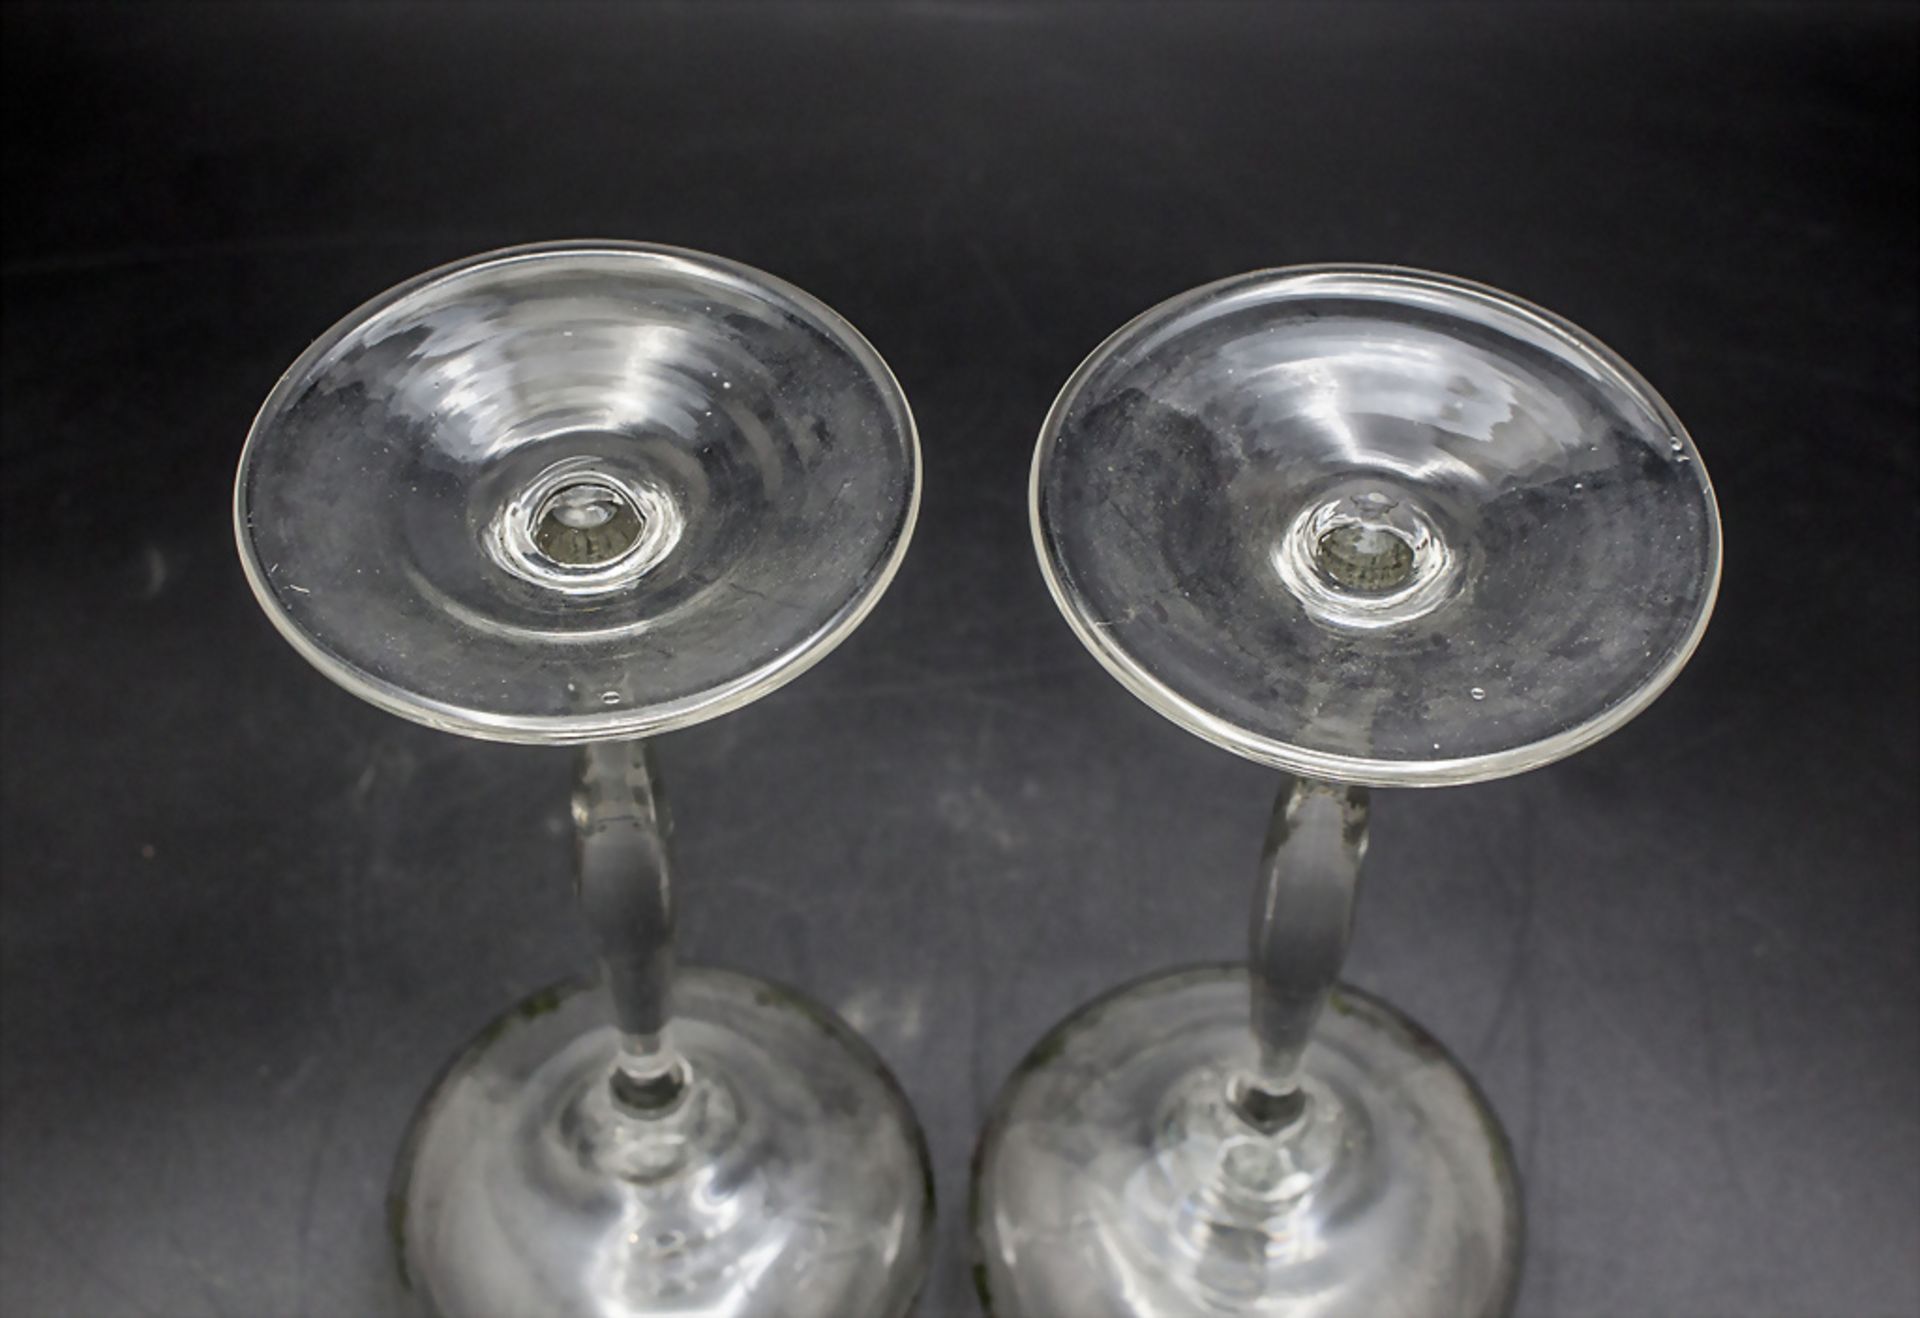 Paar Jugendstil Weingläser / 2 Art Nouveau wine glasses with vine tendrils and grapes, ... - Bild 3 aus 3